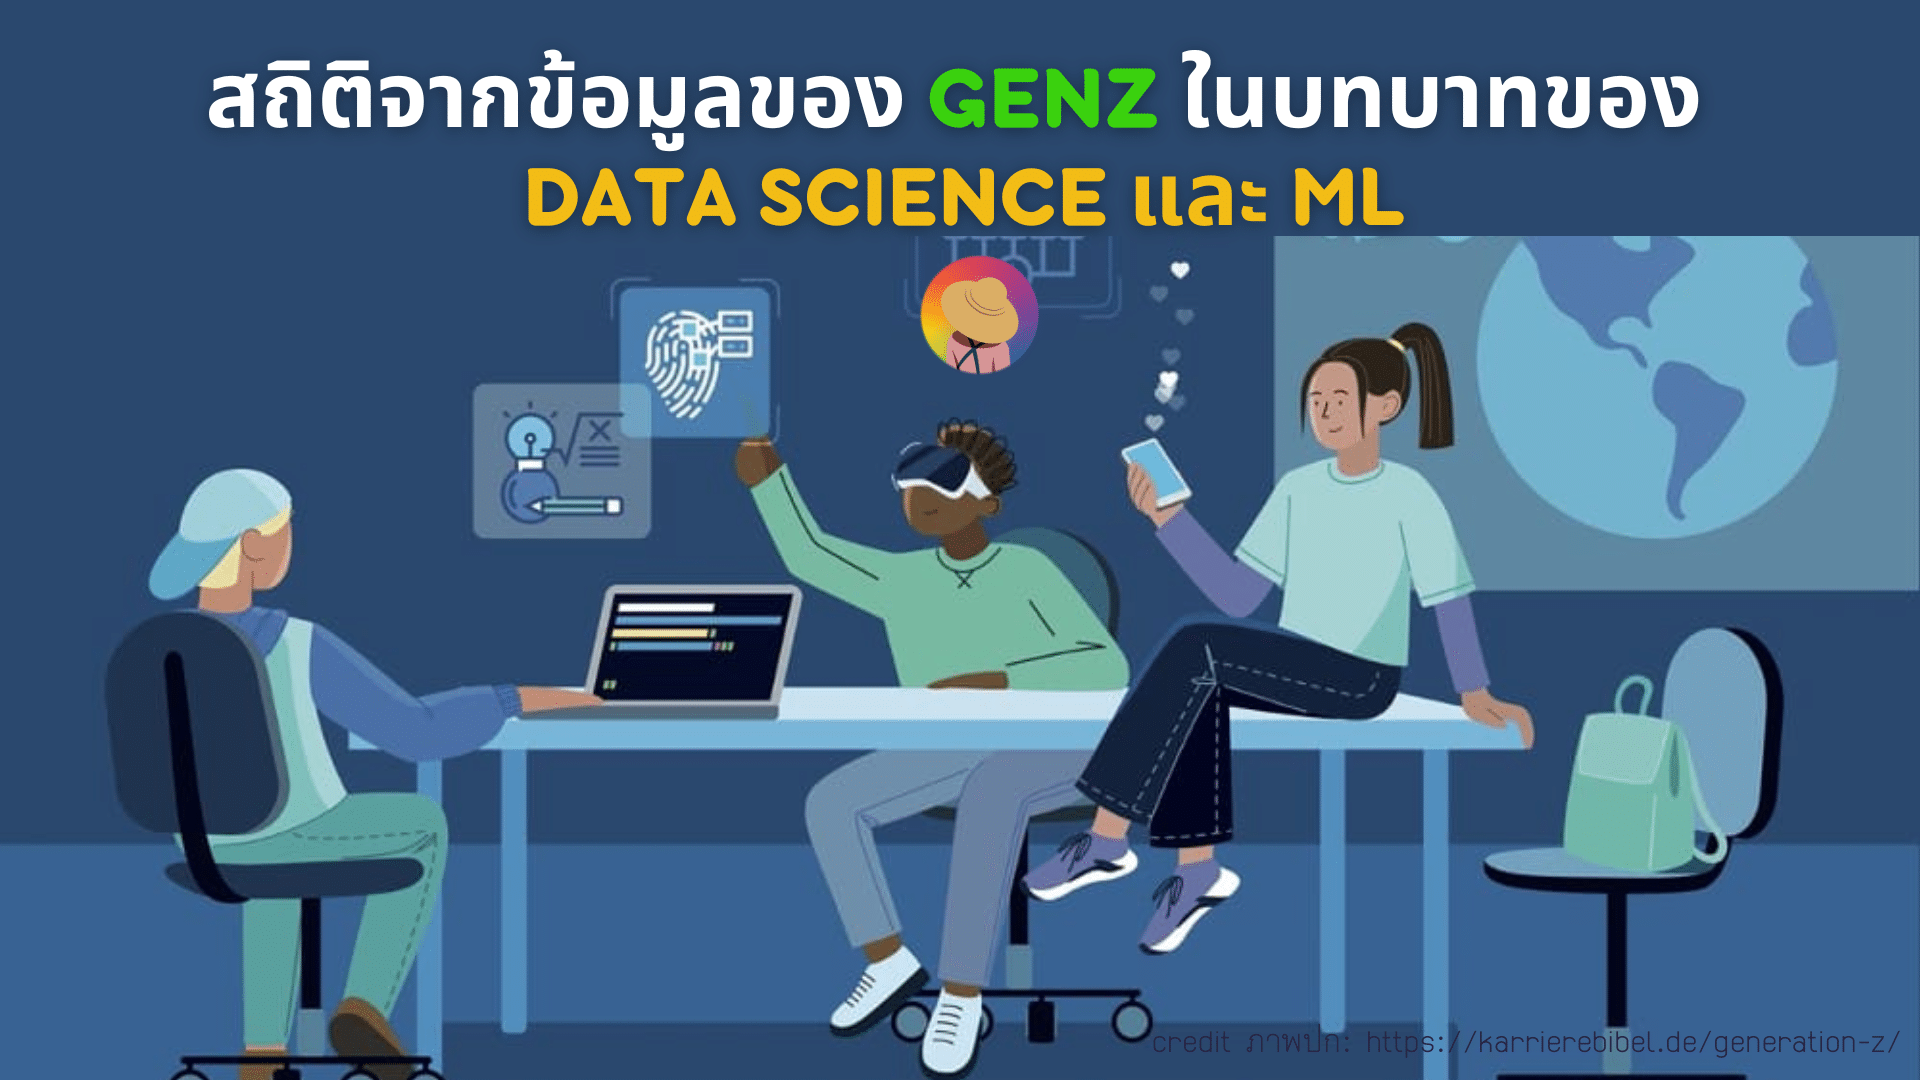 สถิติจากข้อมูลของ GenZ ในบทบาทของ Data Science และ ML